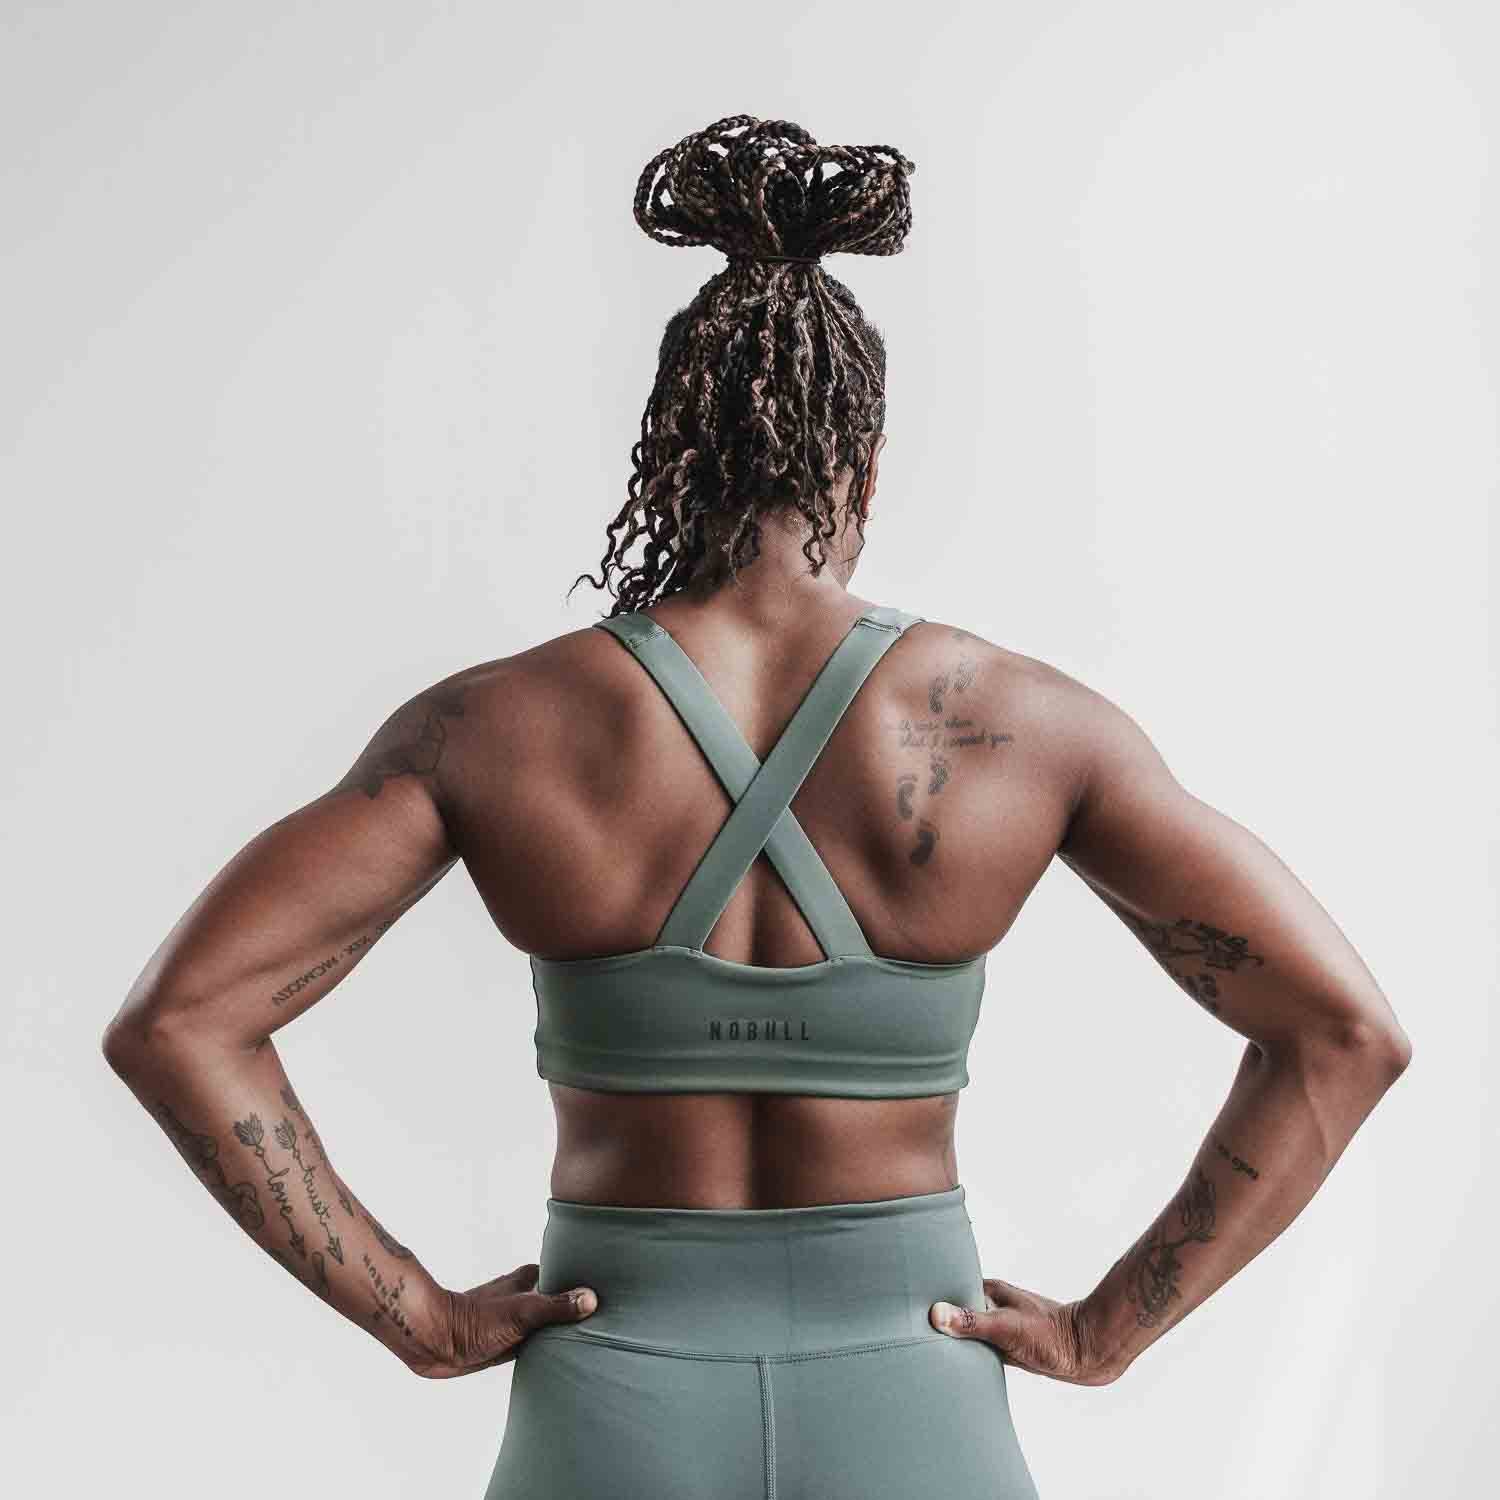 Sleek V-Back Sports Bra - Women's Sports Bra – NOBULL